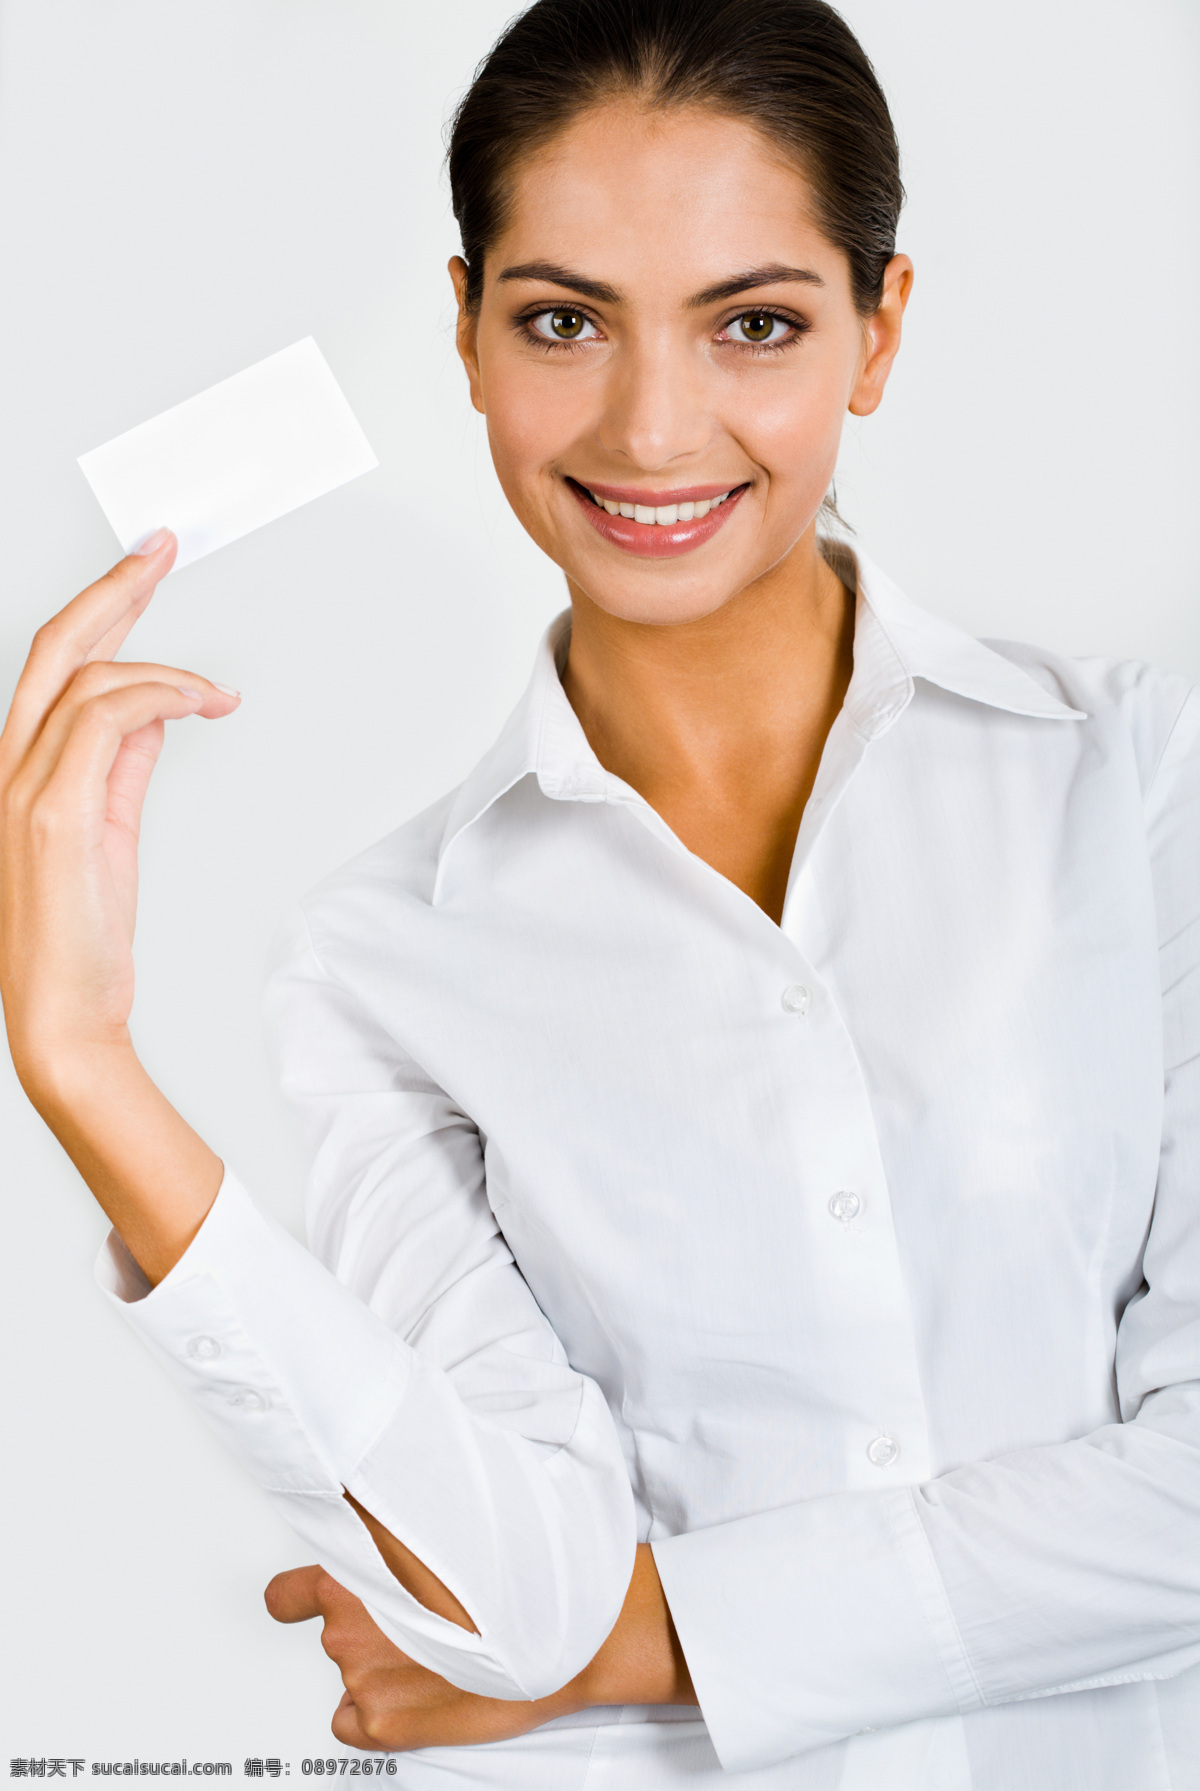 手 卡片 微笑 商务 女性 外国女人 美女 商务女人 职业女性 手势 拿着 白领 展示 空白 广告模板 银行卡 名片 高清图片 商务人士 人物图片